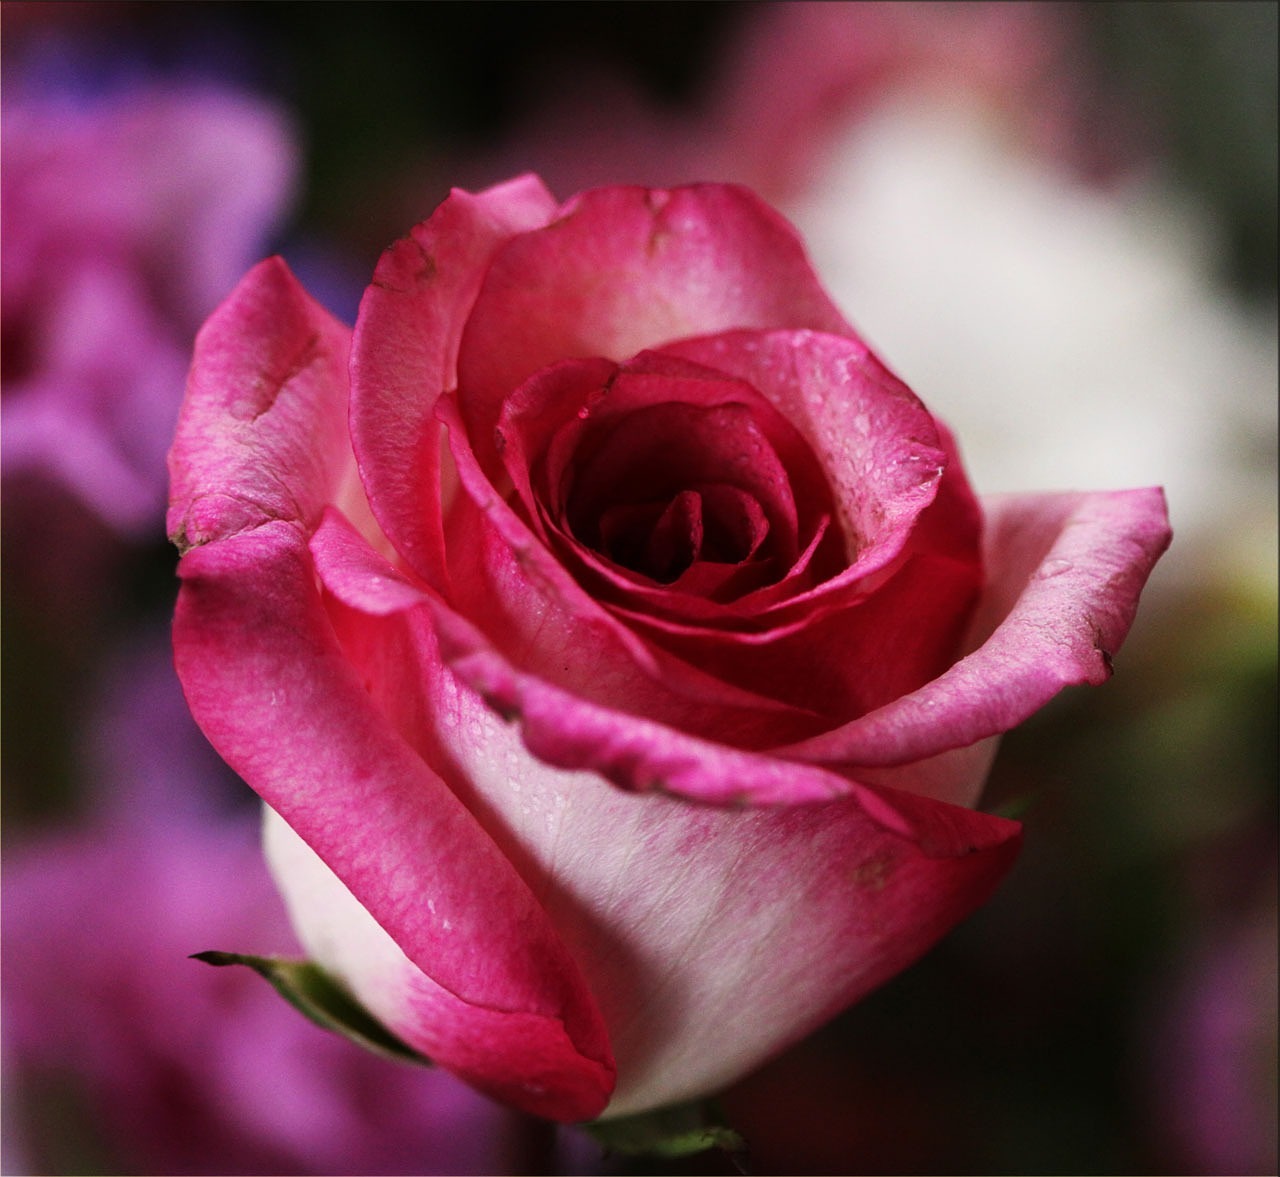 Image - pink rose rose flower blossom